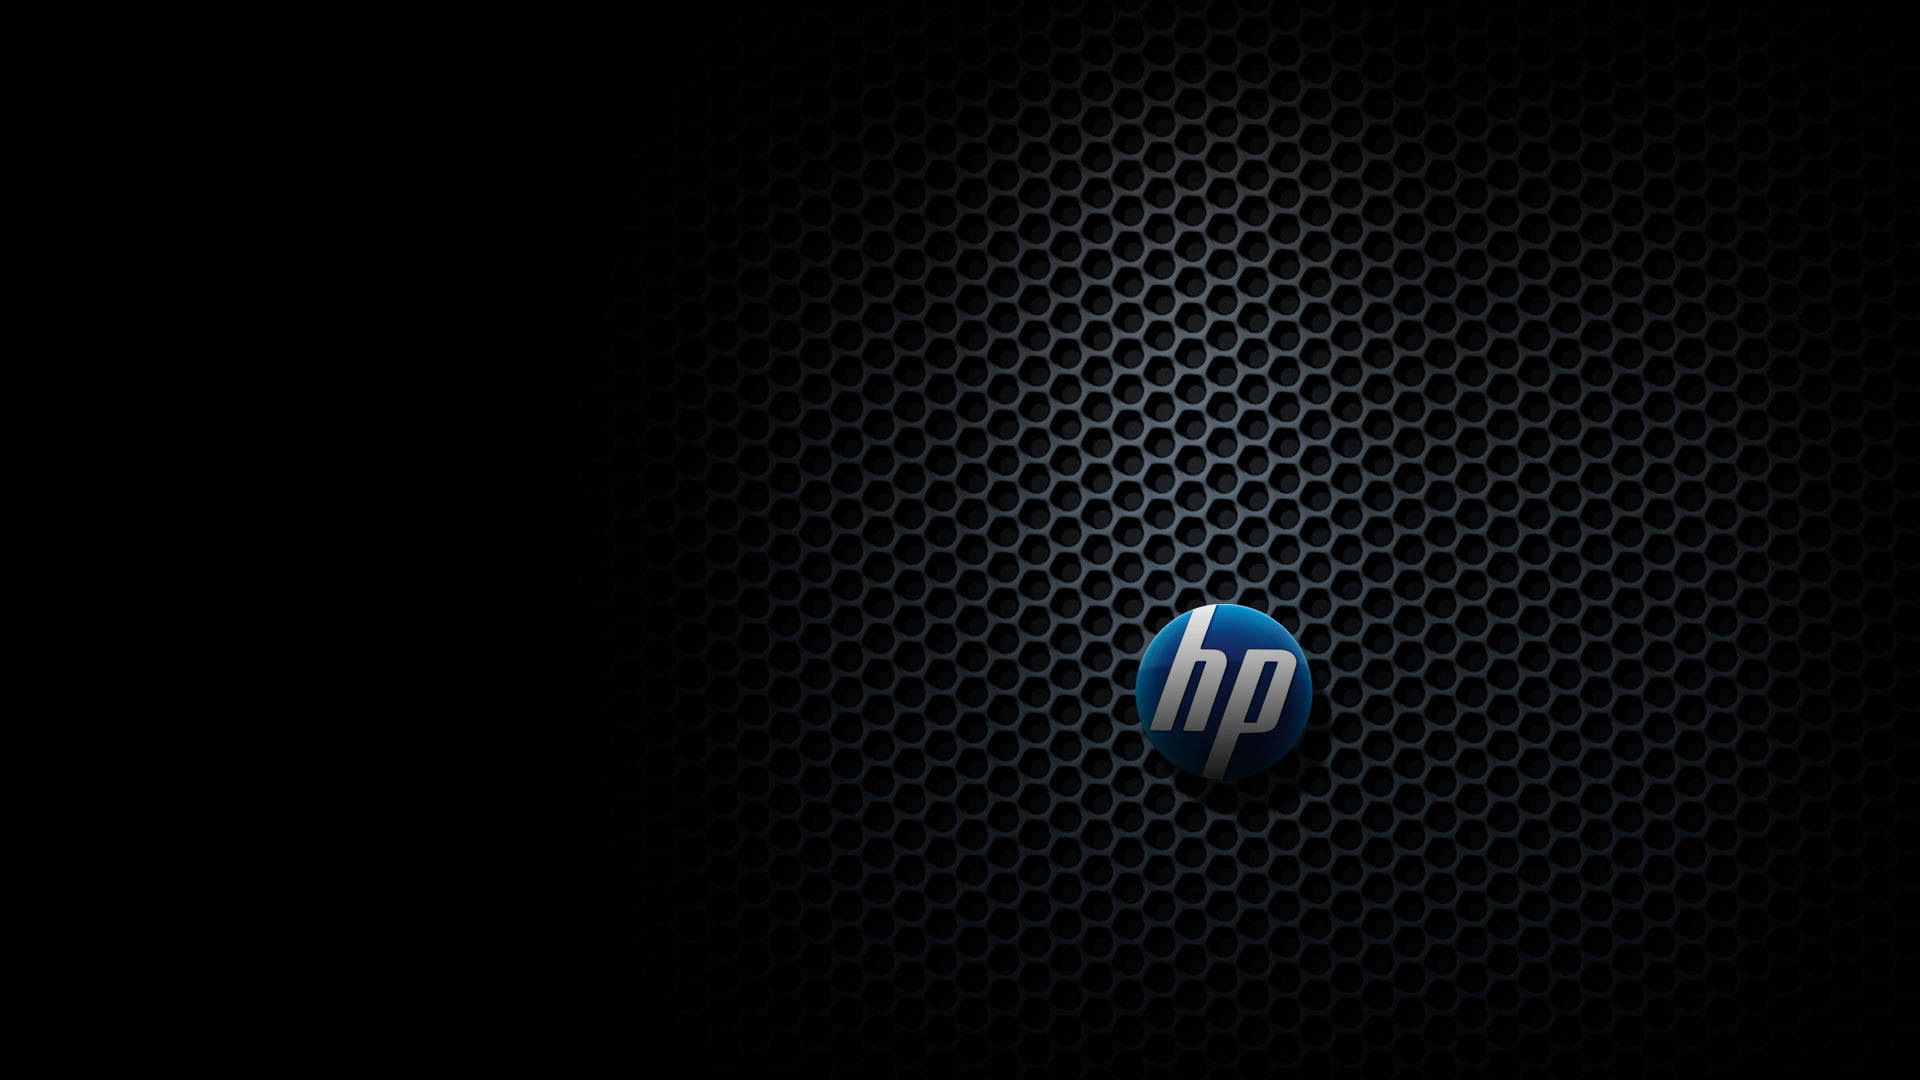 Iconic Hp Laptop Logo Background